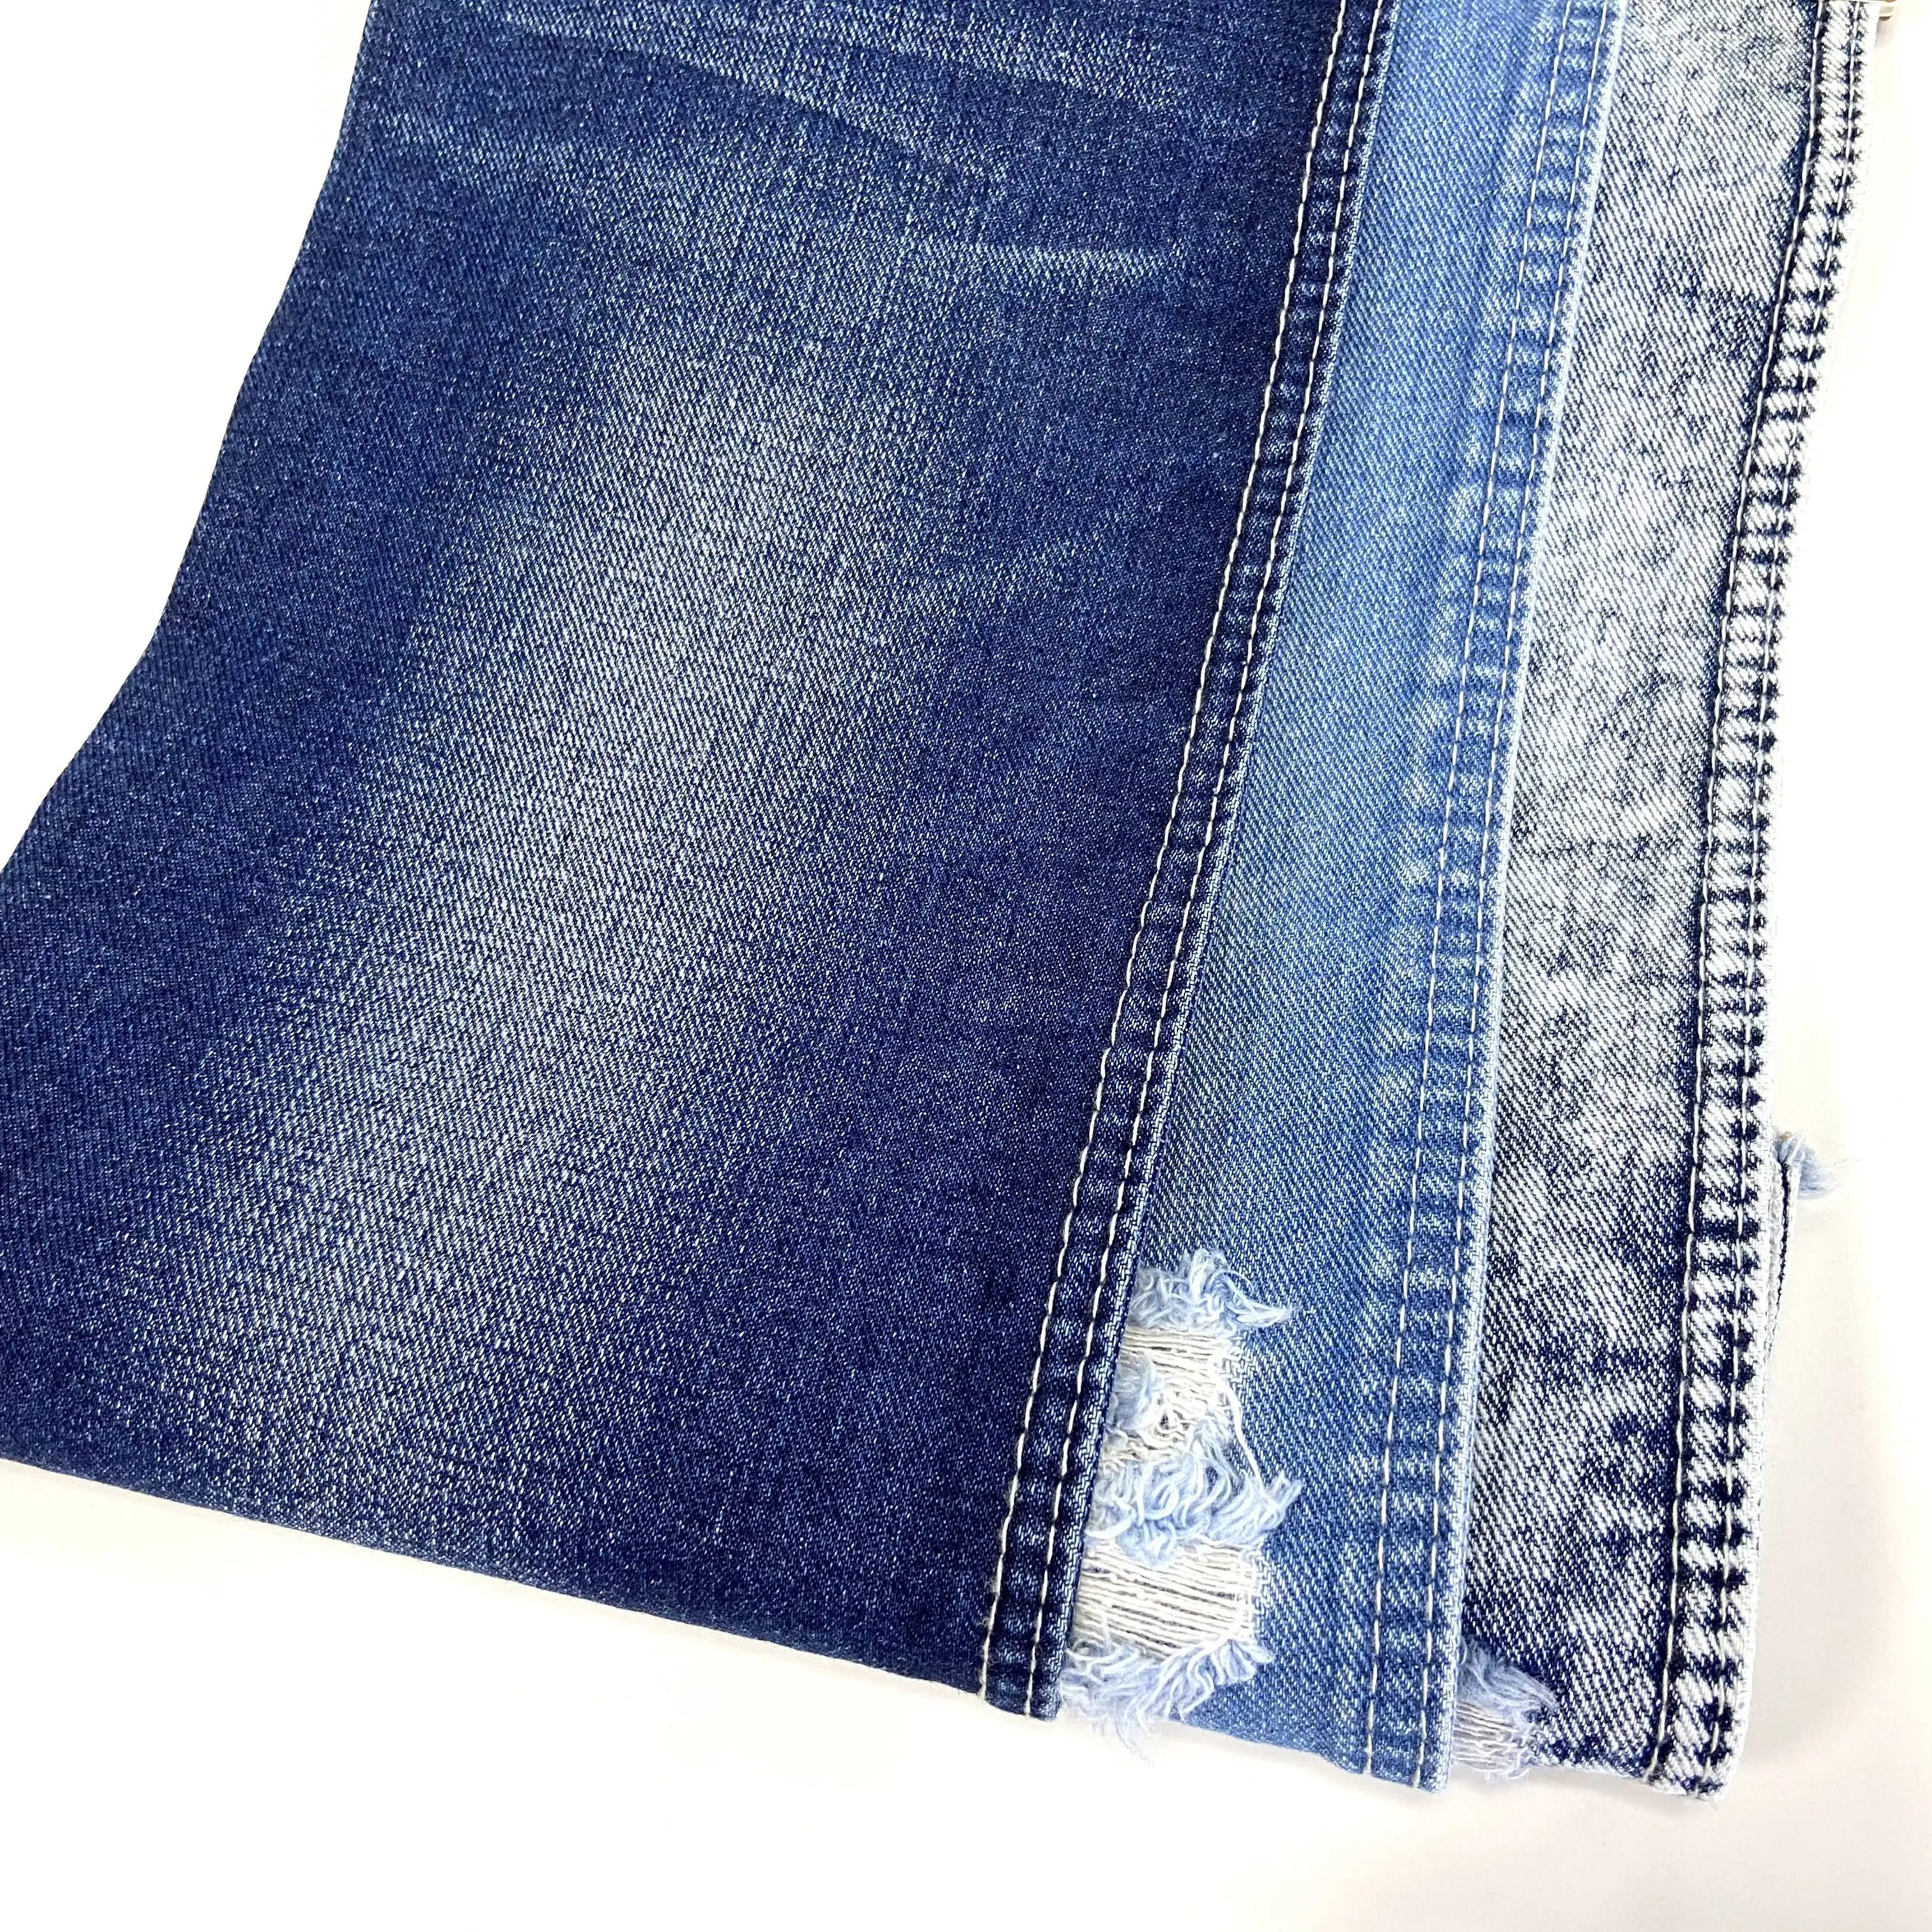 Articolo 9775W 405G 70/71 ''cotone Spandex stile strappato urban star jeans tessuto jeans diesel